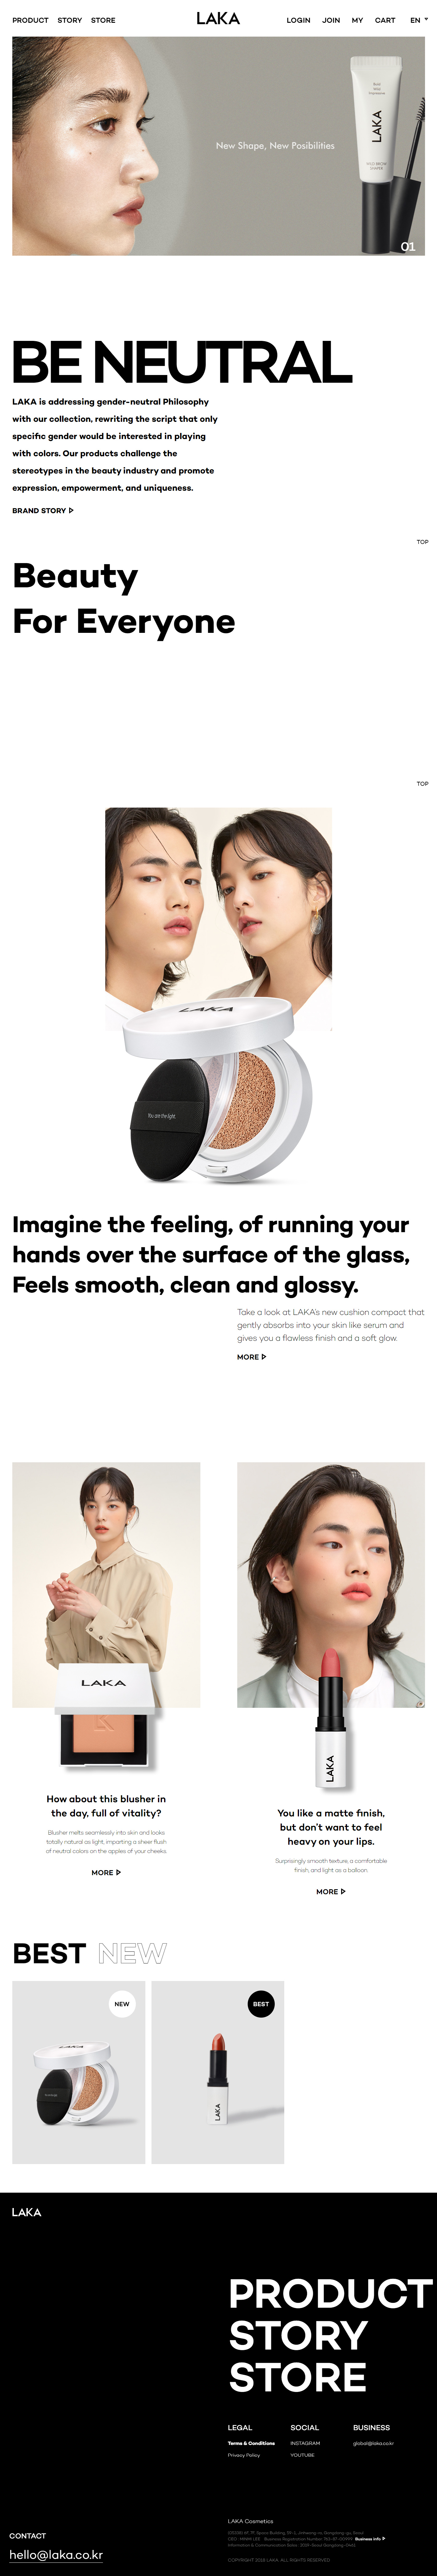 韩国LAKA化妆品网站设计